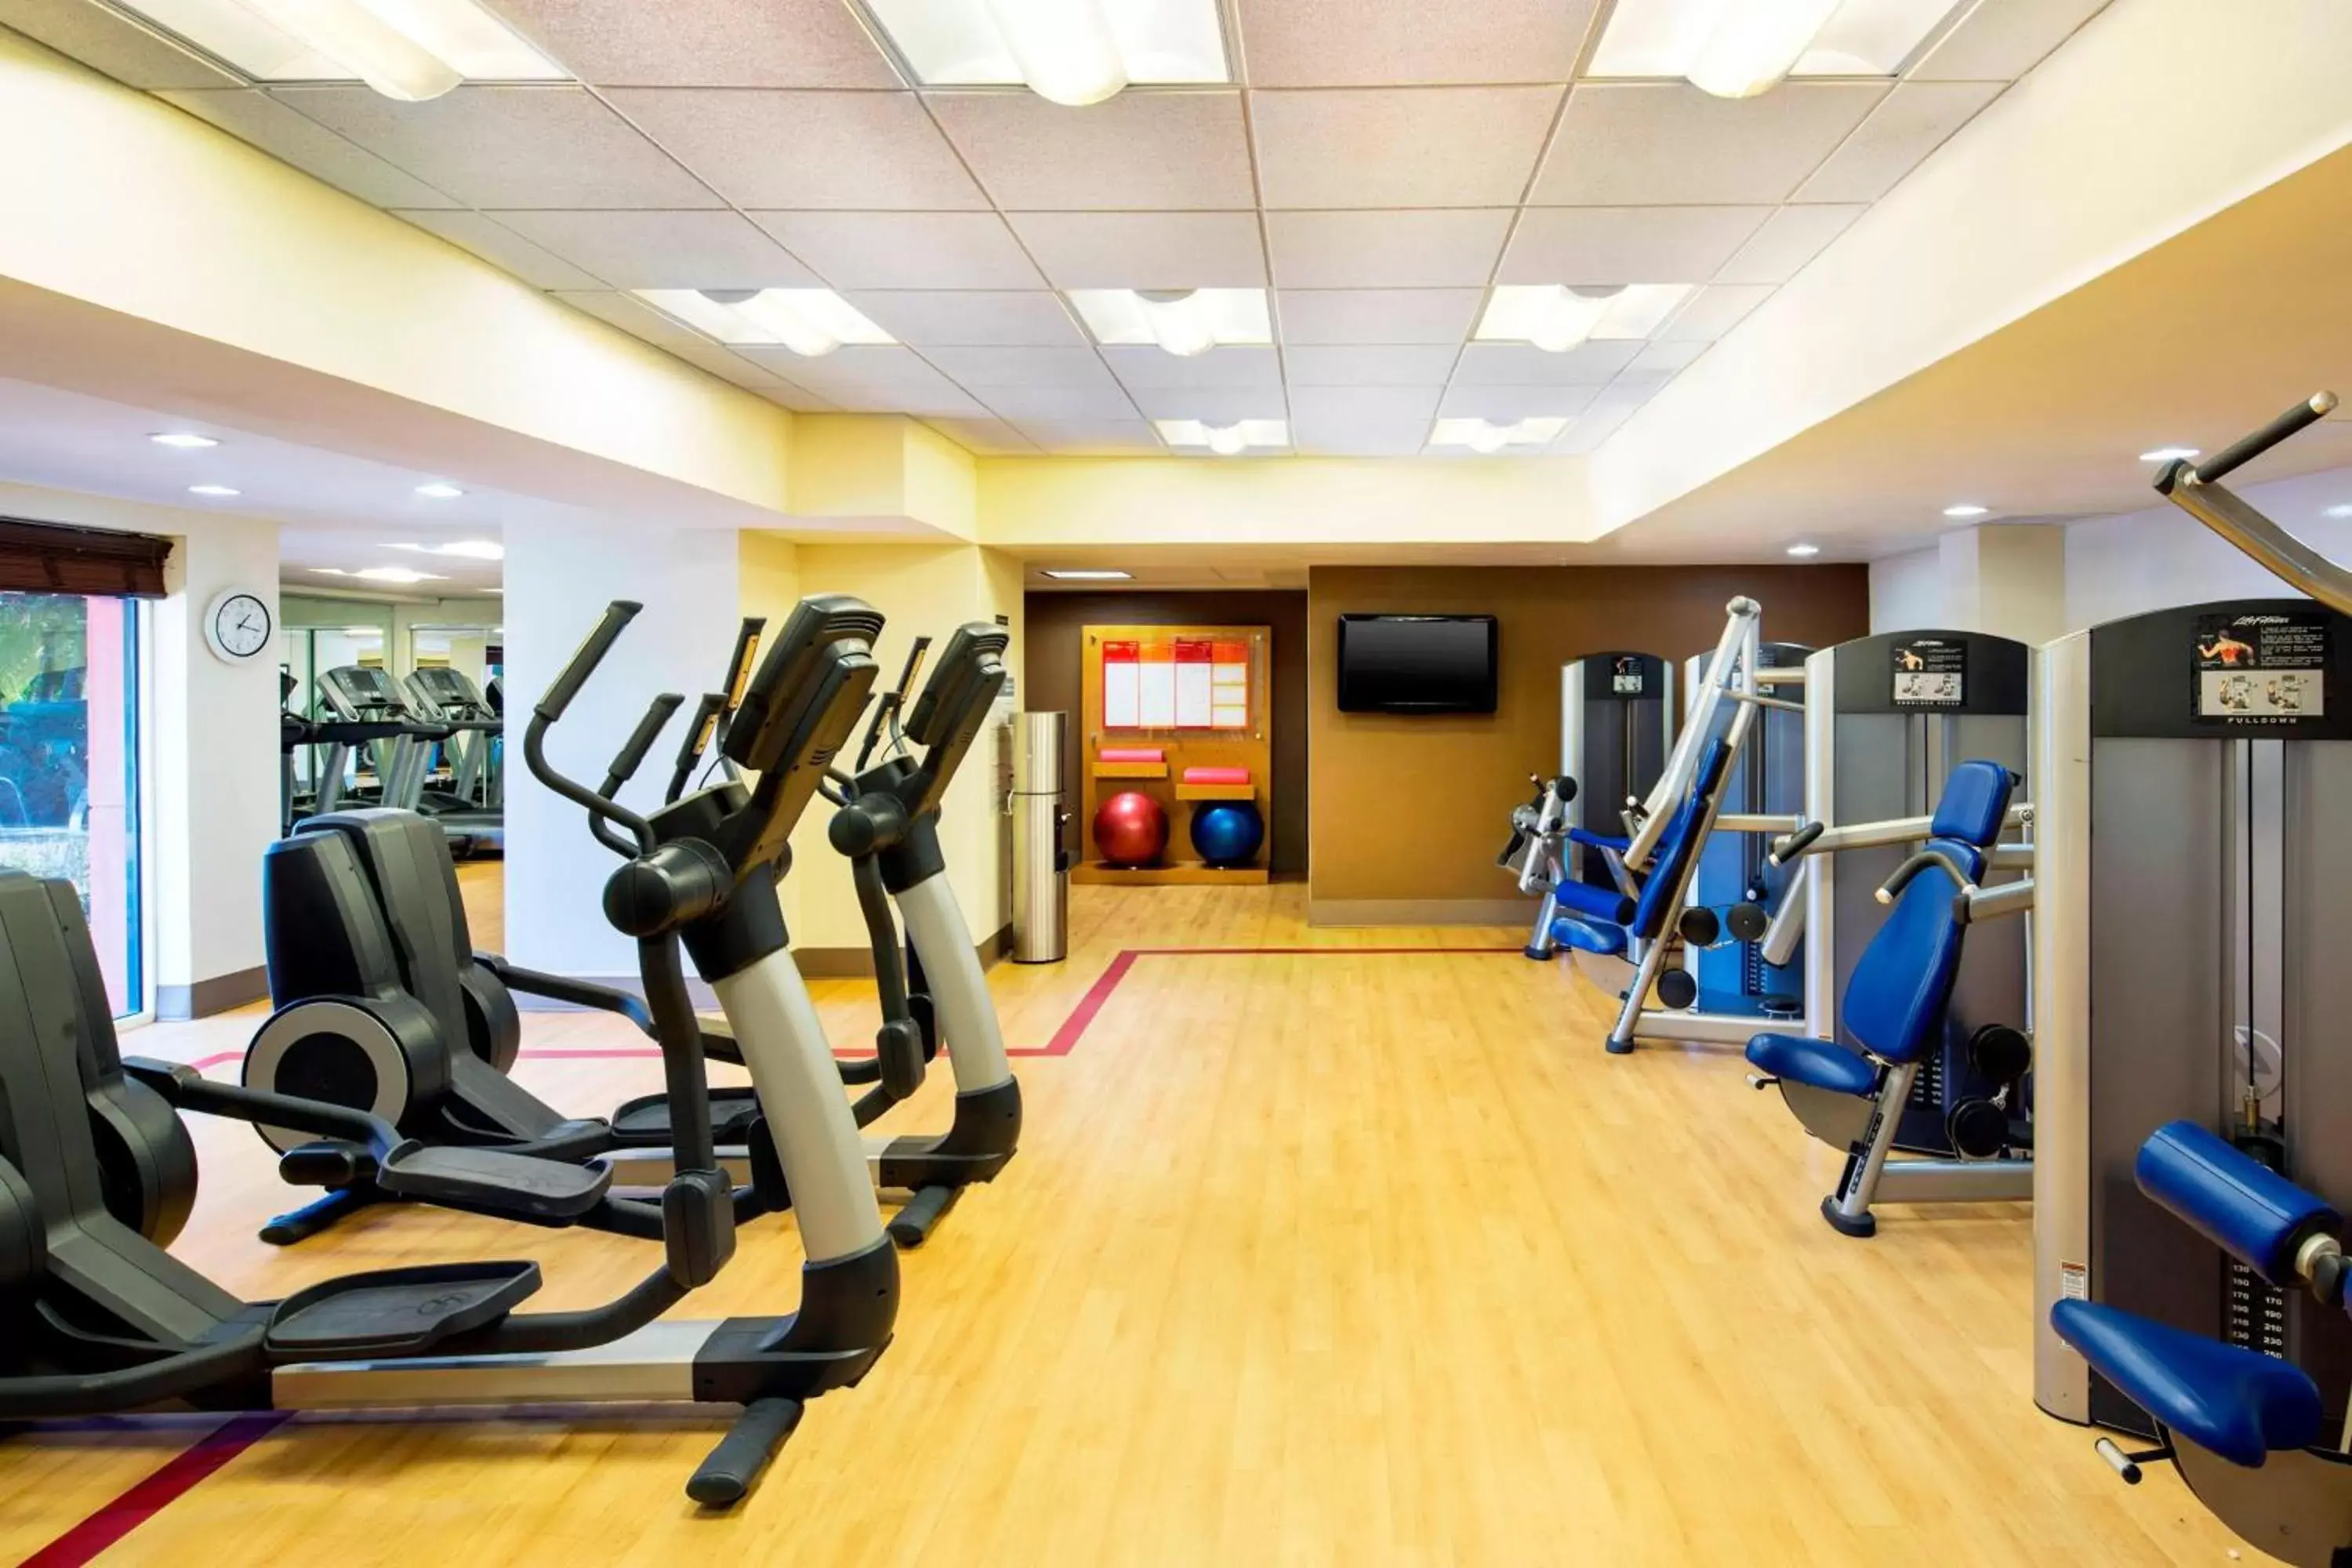 Fitness centre/facilities, Fitness Center/Facilities in Sheraton Orlando North